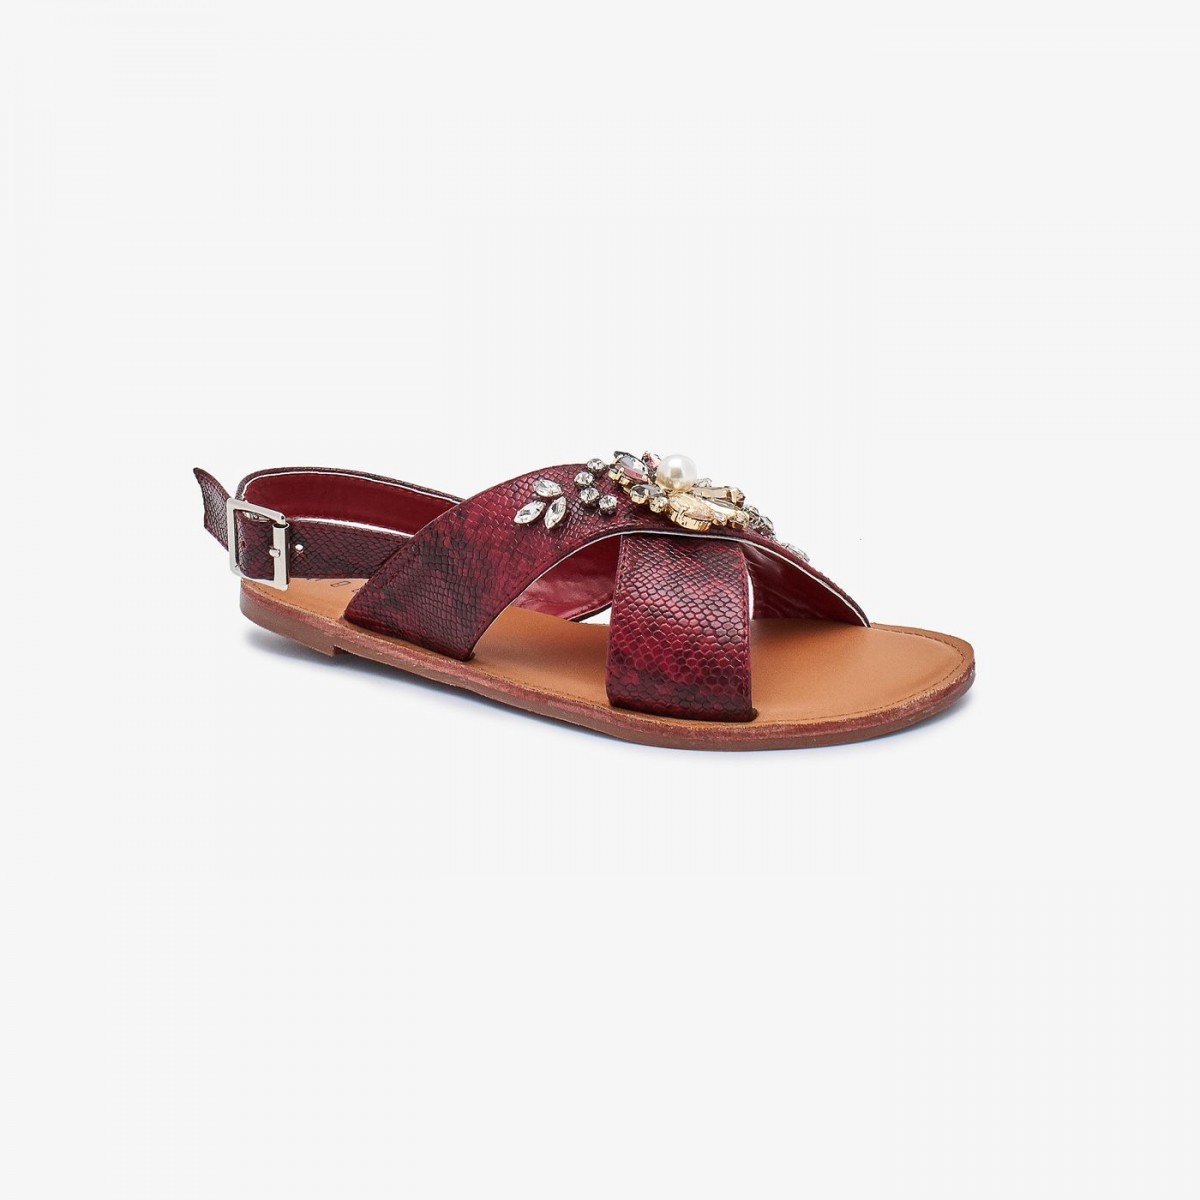 /2019/08/reeva-ladies-fancy-sandals-rv-sd-0471-maroon-image1.jpeg